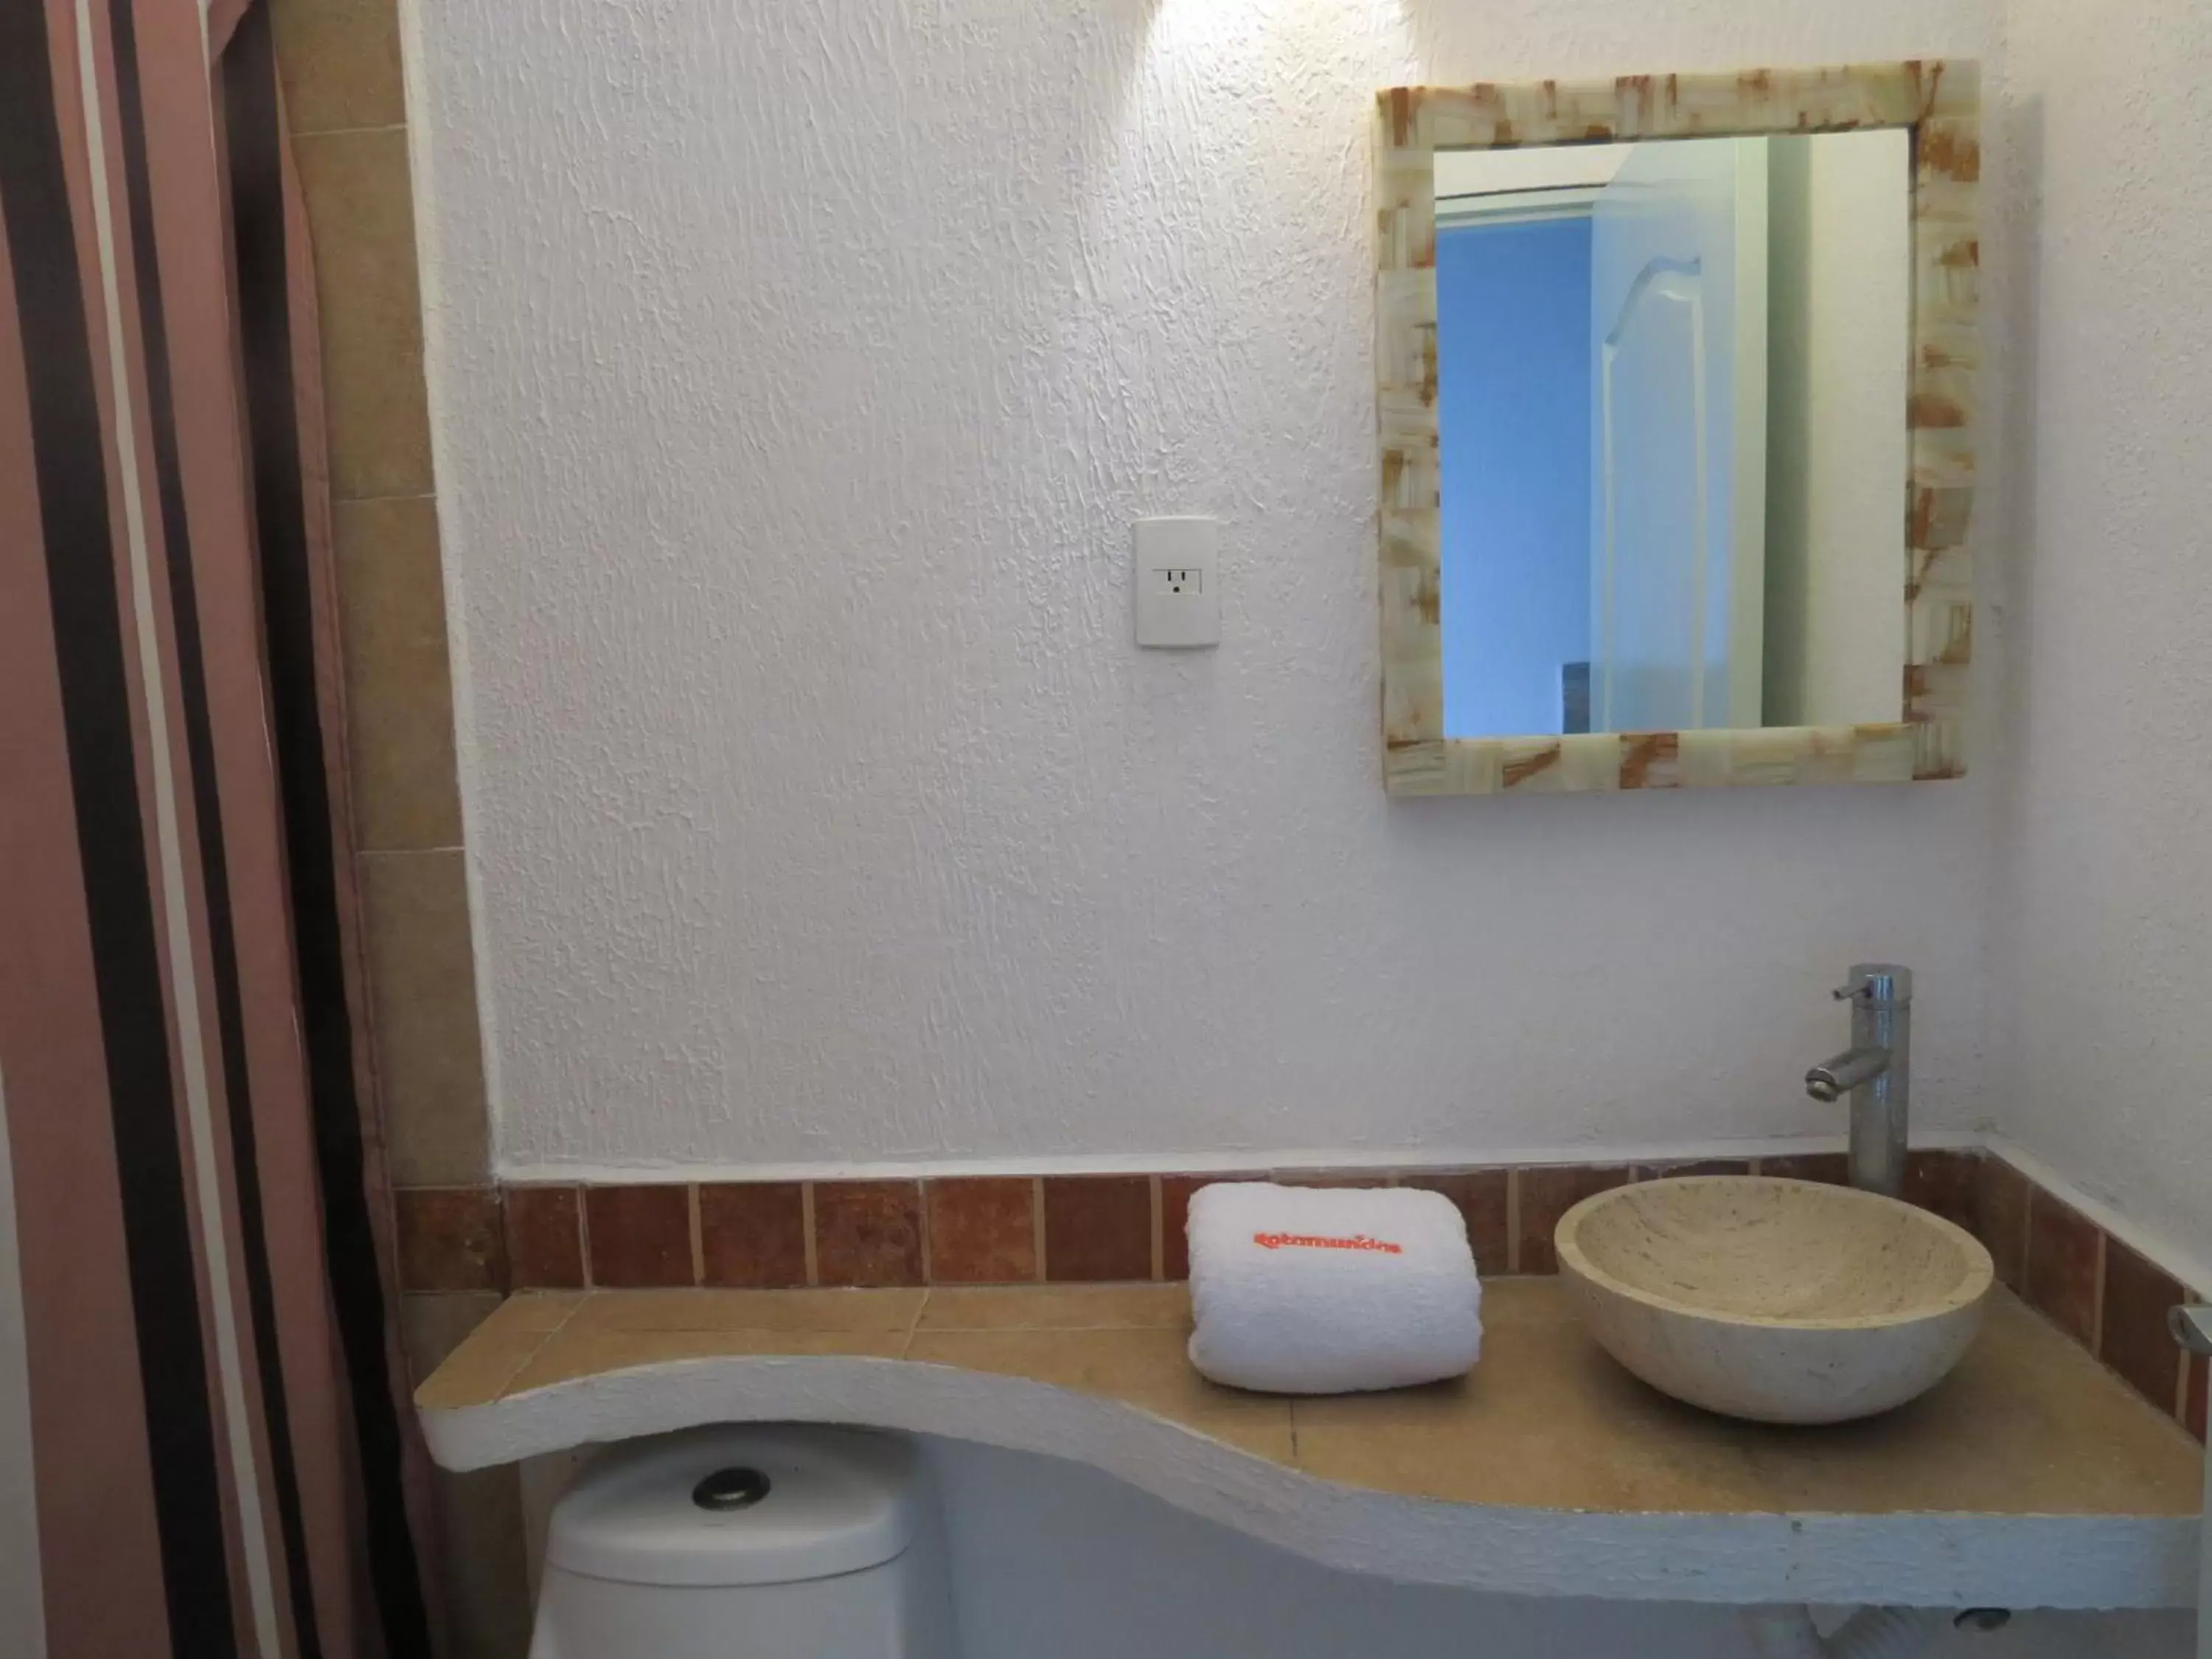 Bathroom in Hotel Albri by Rotamundos